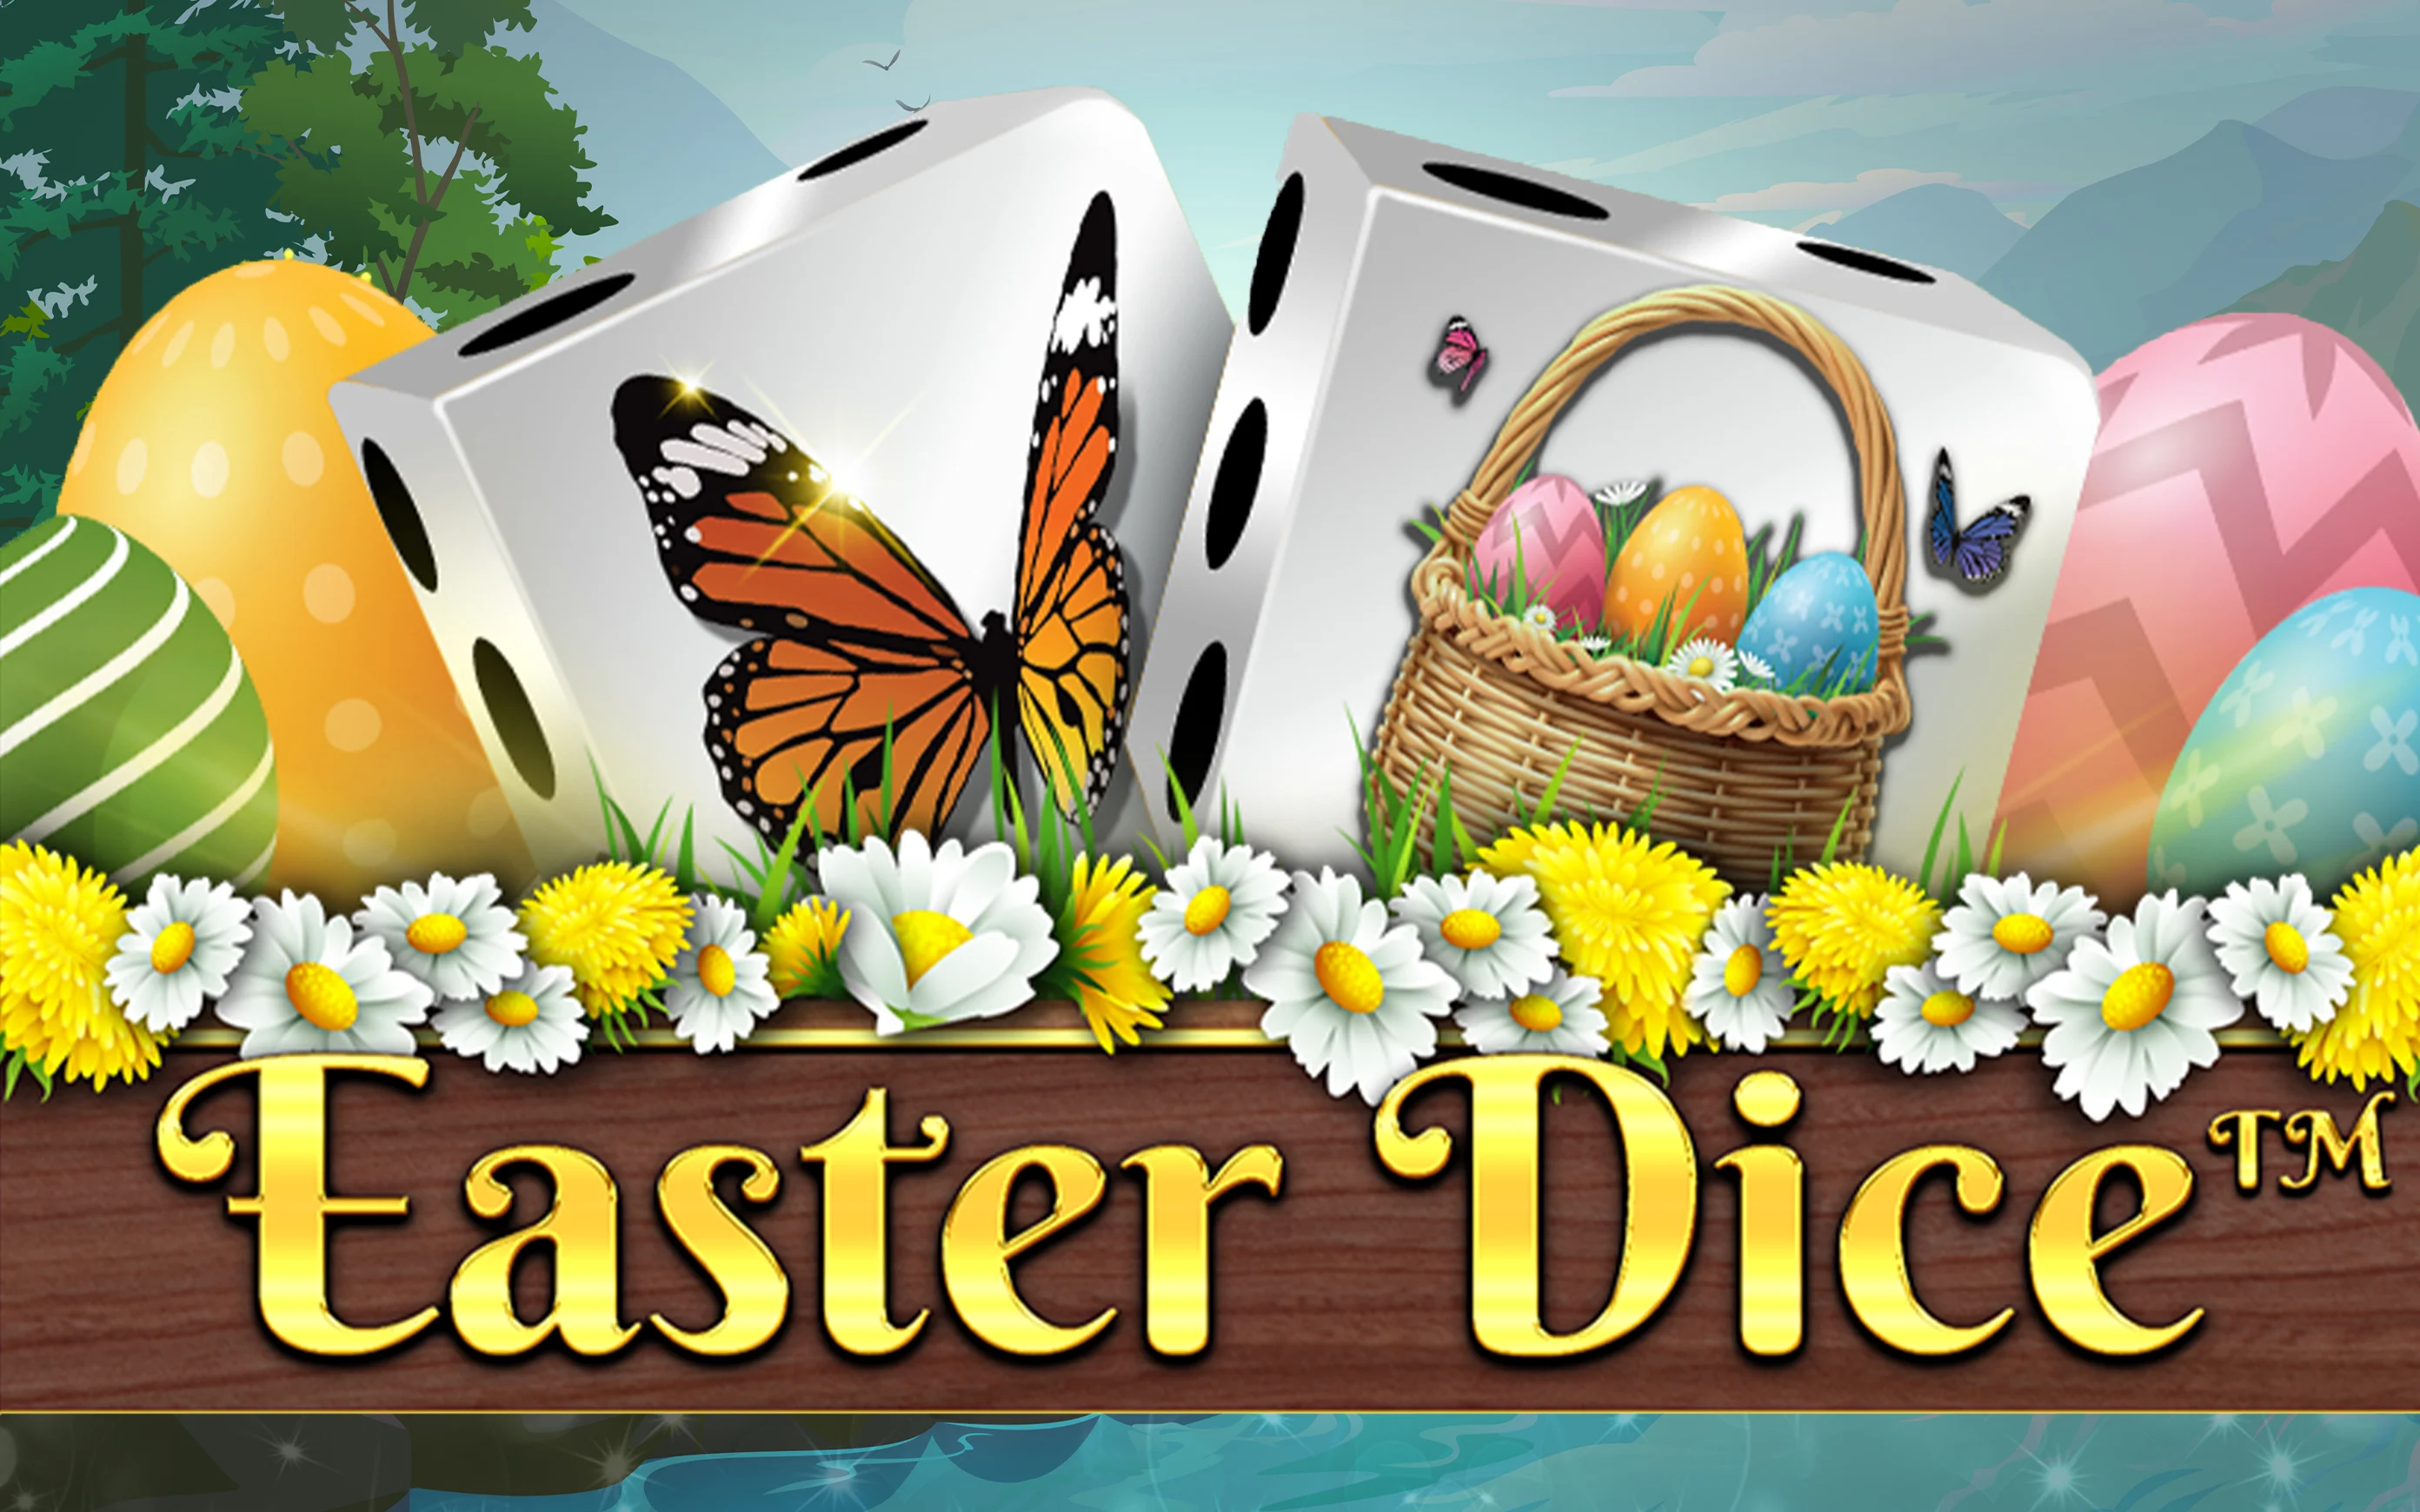 Spil Easter Dice på Starcasino.be online kasino
